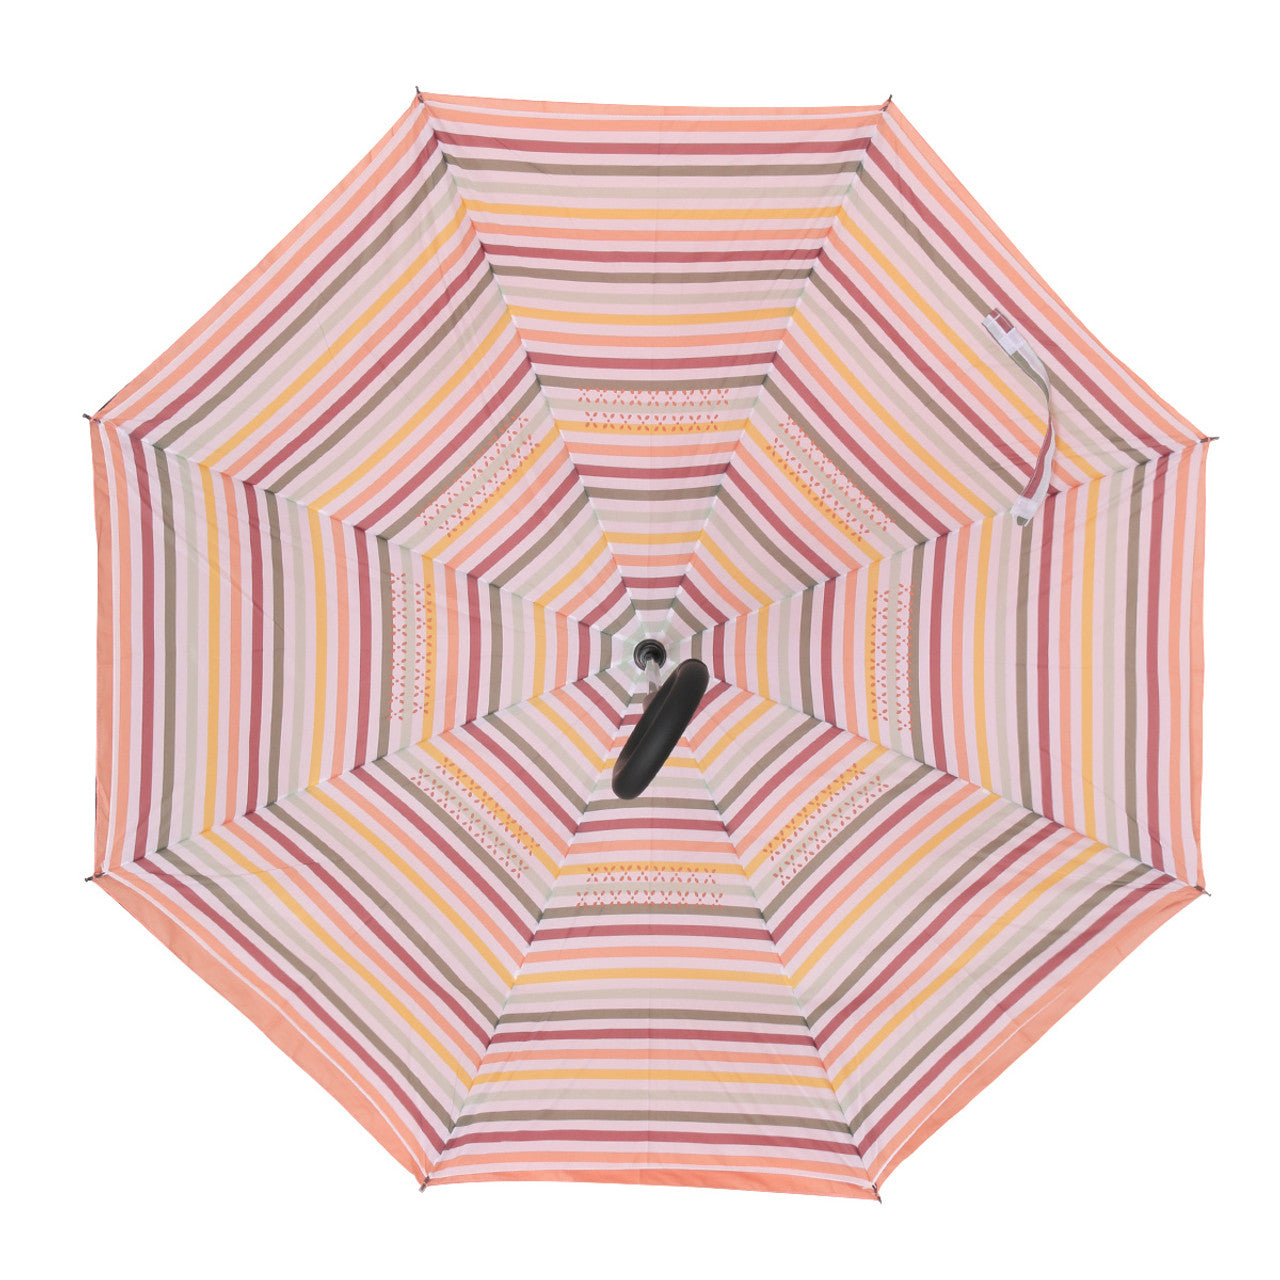 Inverted Umbrella